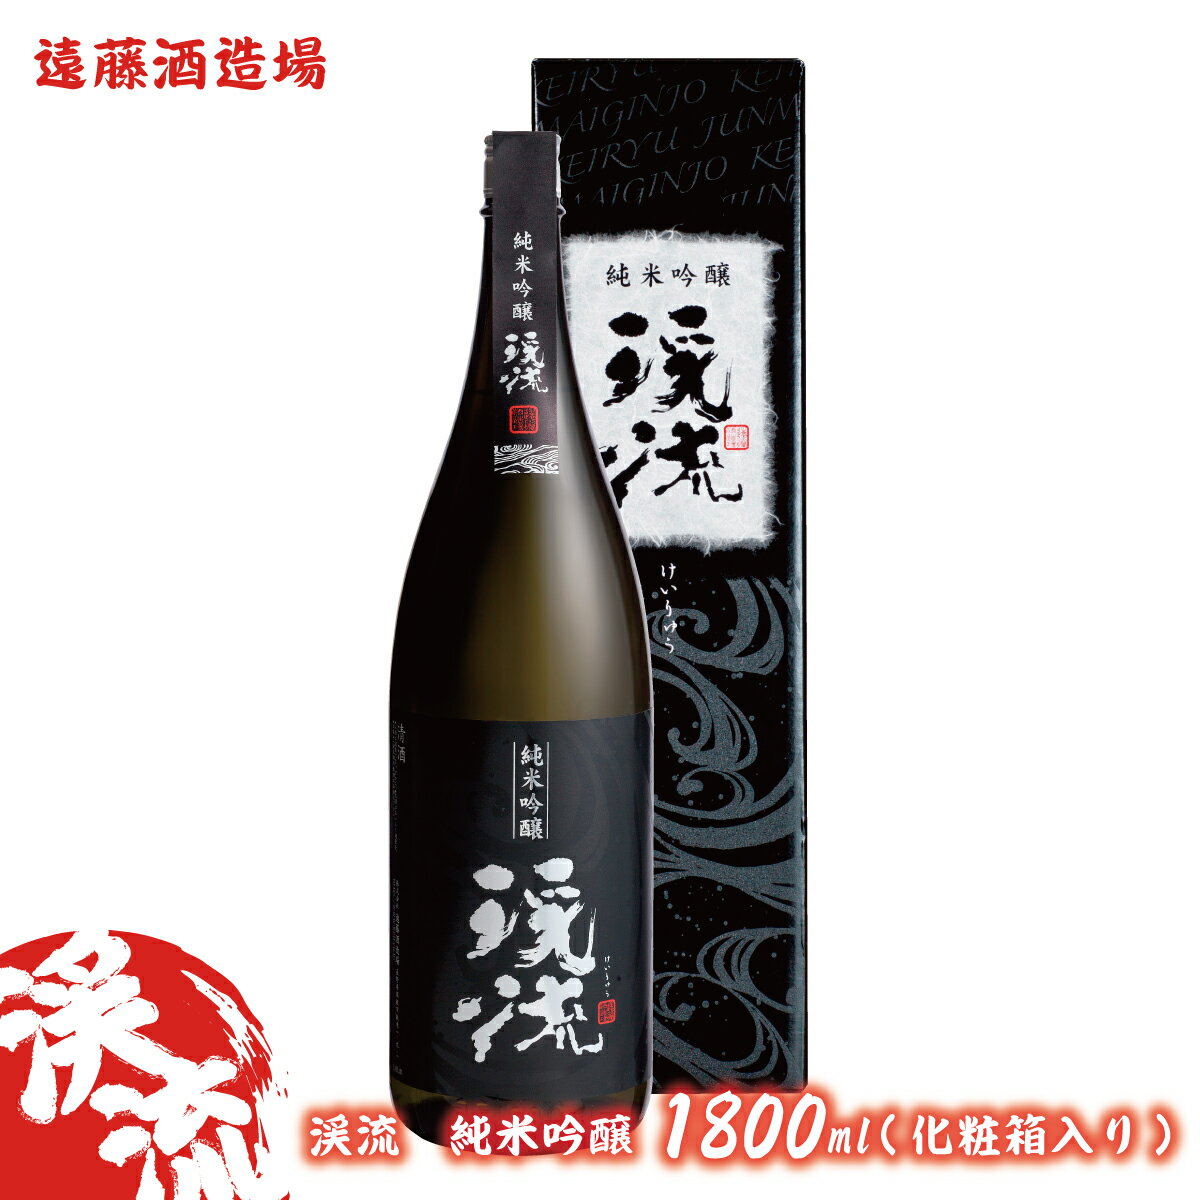 日本酒 | ふるさと納税の返礼品一覧 (人気順)【2022年】 | ふるさと納税ガイド